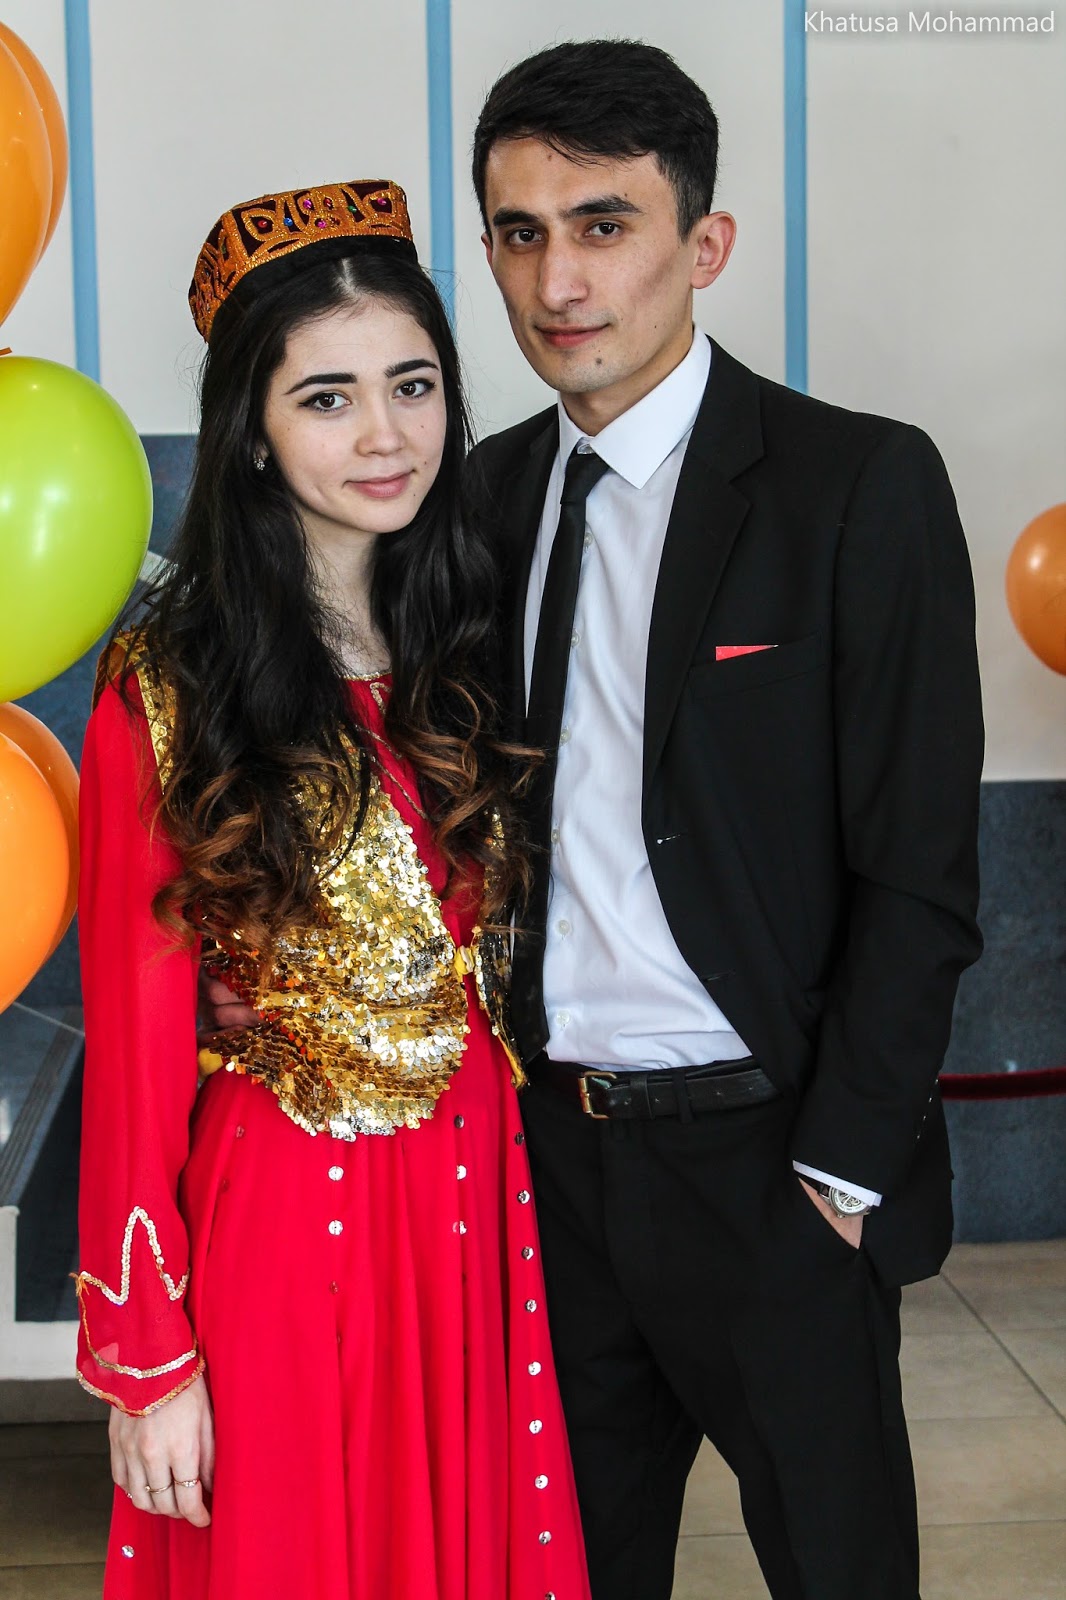 Таджикский молодежный. Молодежь Таджикистана. Таджики молодежь. Таджикистан современная молодежь. Таджикские молодежные девочки.